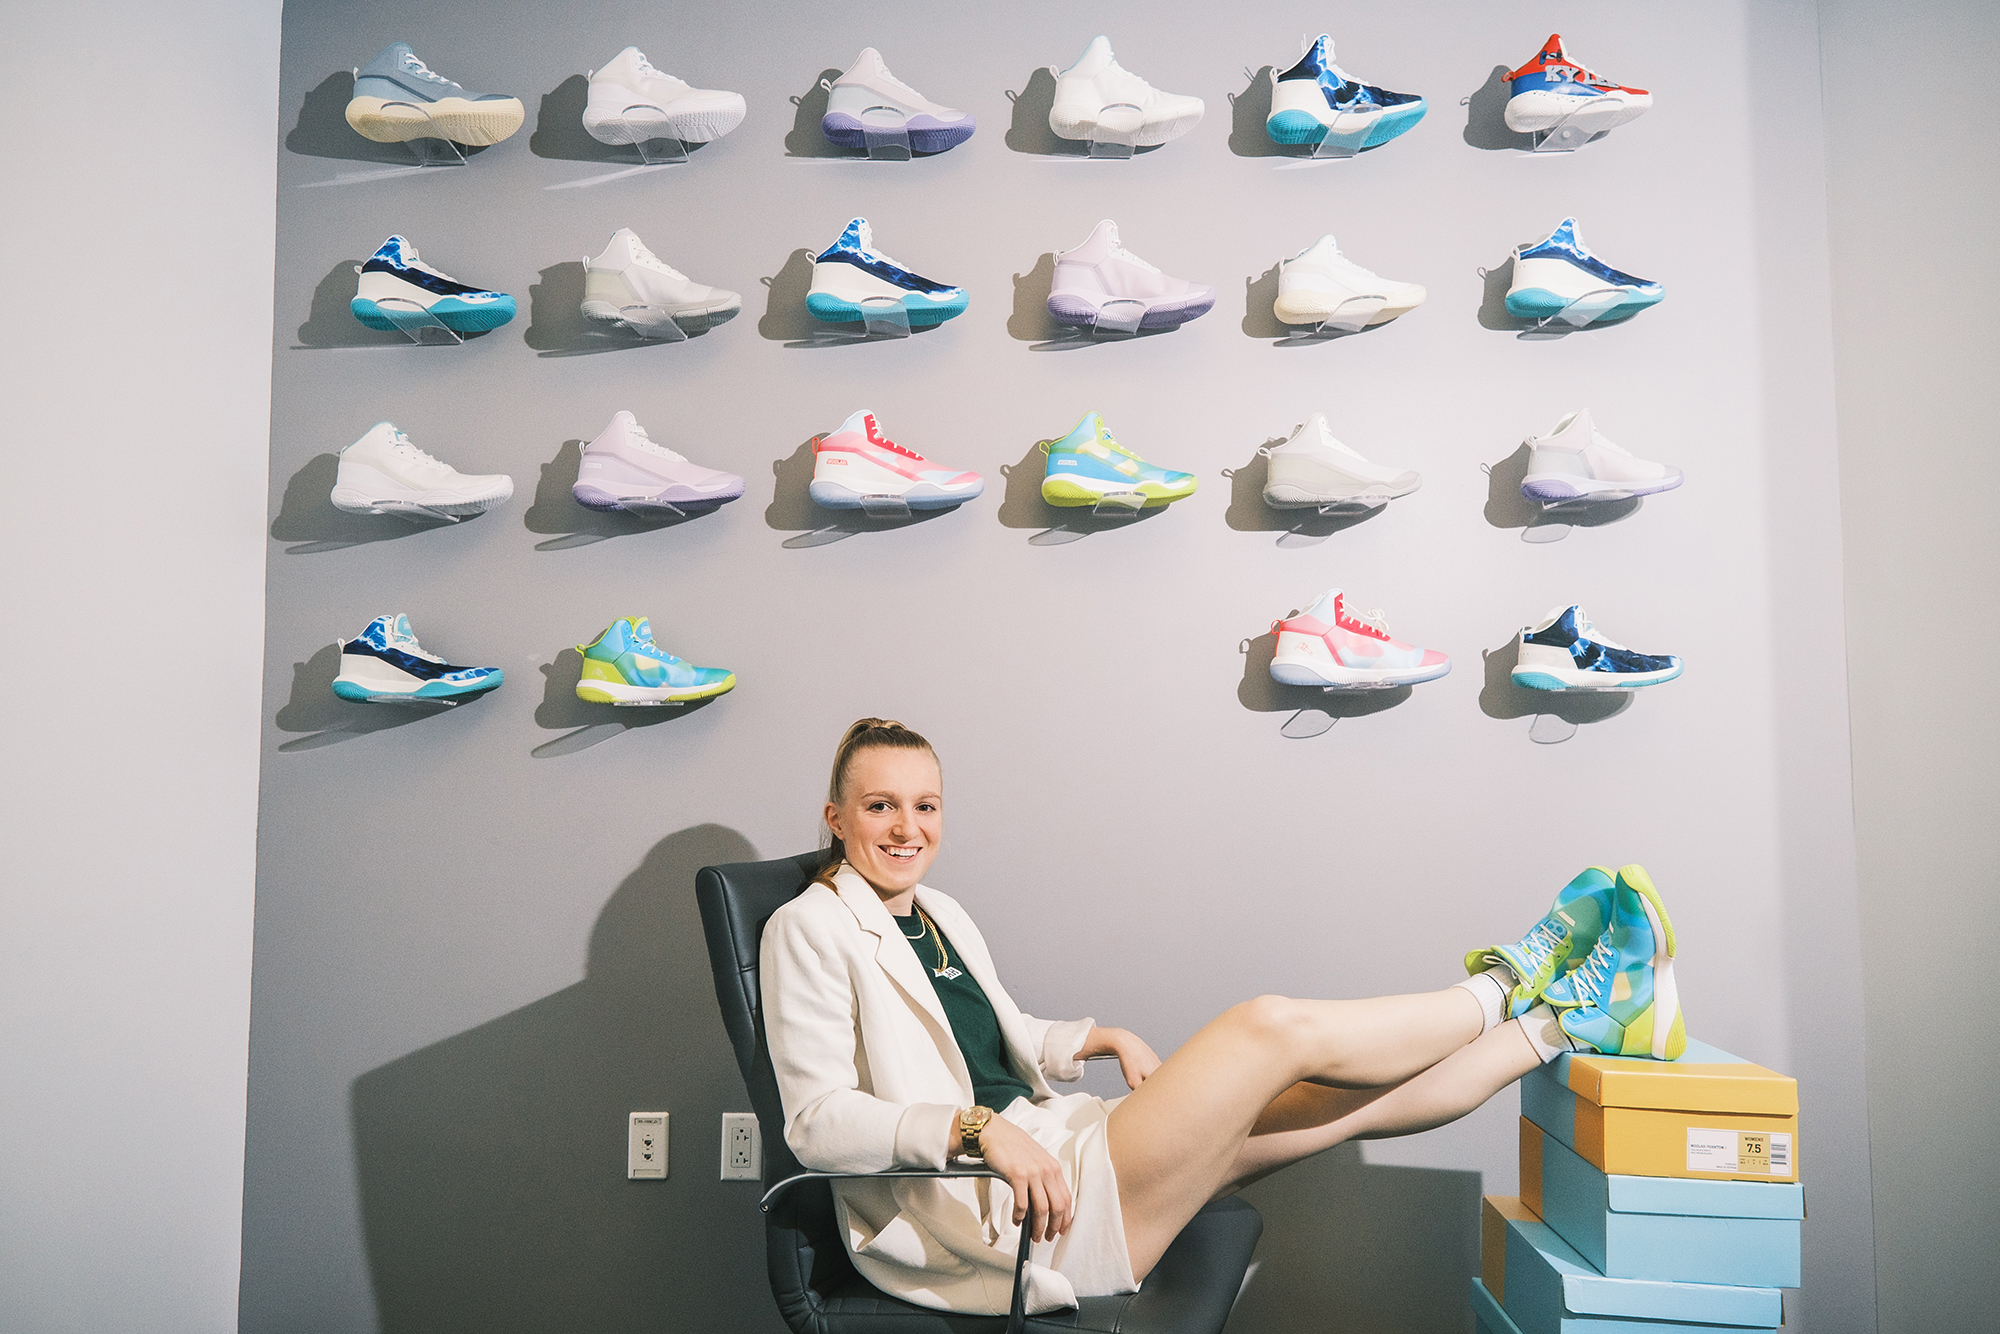 Anuncio de Nike inspiró crear primera zapatilla de baloncesto para mujer